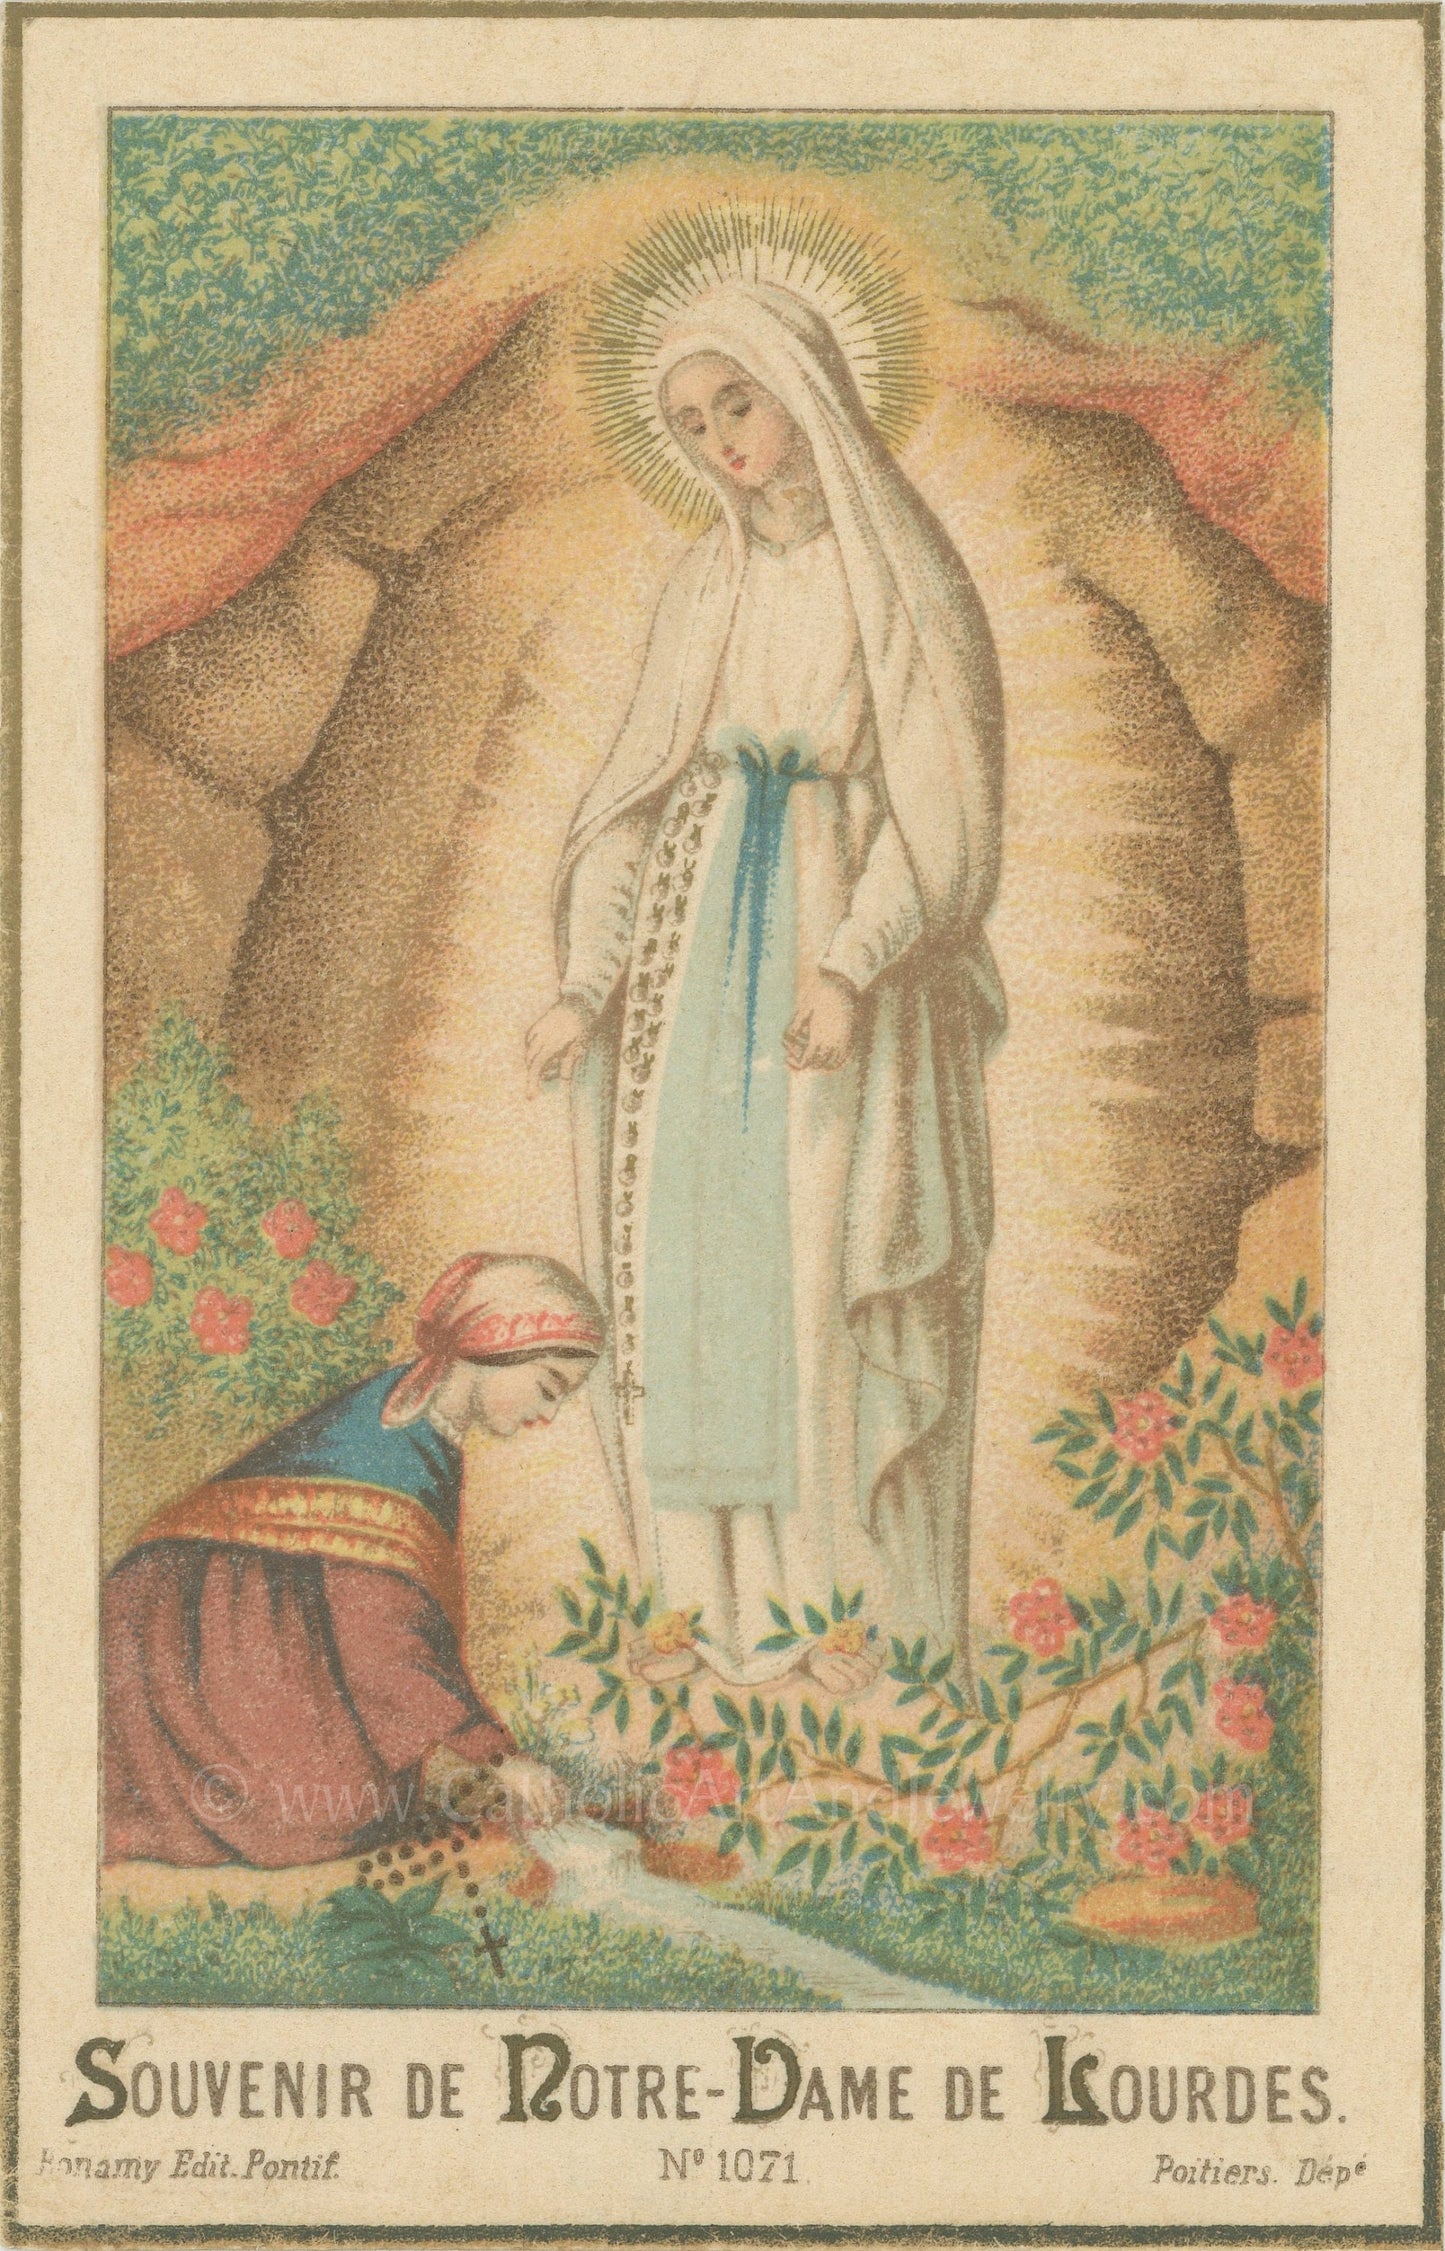 Our Lady of Lourdes – Based on Vintage Holy Card – 3 sizes – Catholic Art